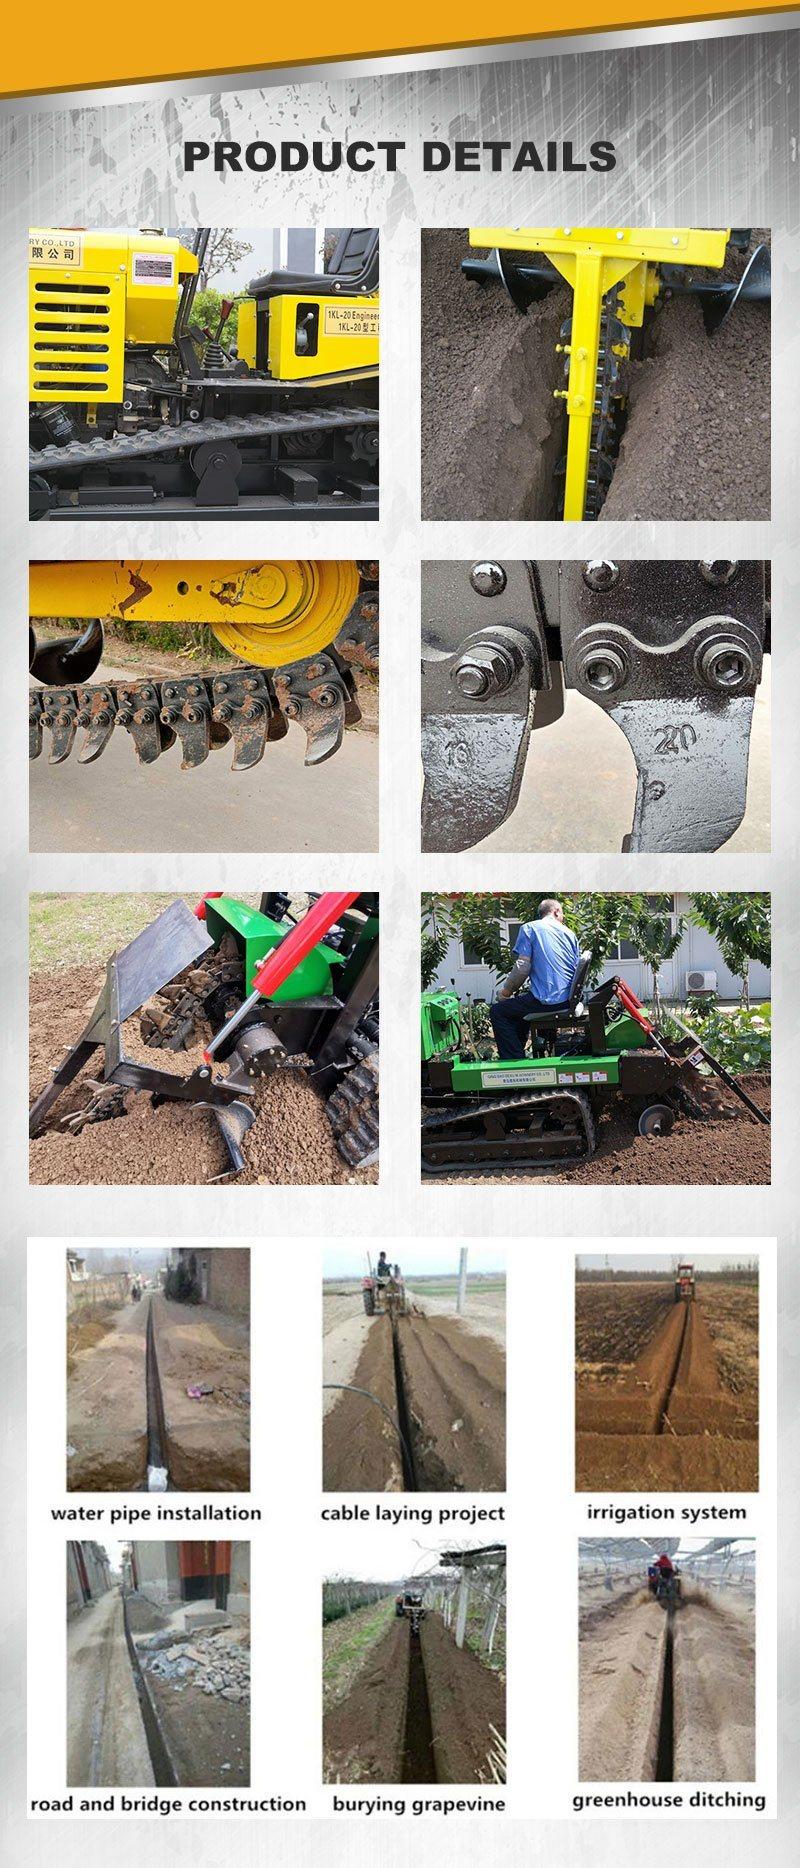 Trencher for Excavator/Skid Loader/ Backhoe Loader/Tractor